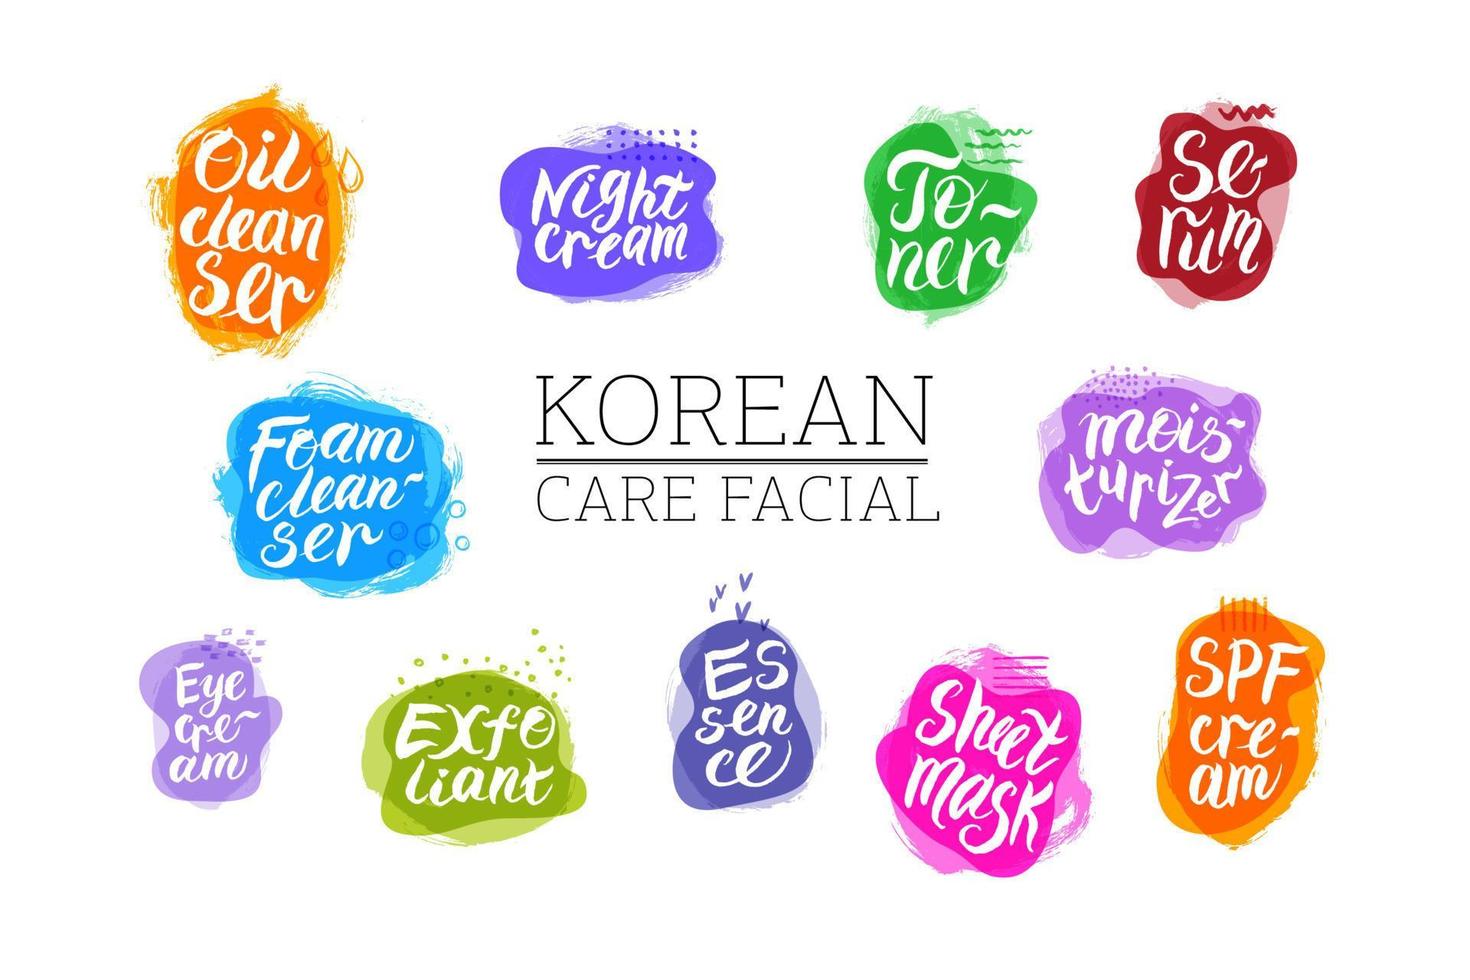 koreanska hud vård Produkter sådan som - ansiktsbehandling olja, rensning skum, exfolierande, toner, väsen, ark mask, serum, fuktkräm, öga grädde, natt grädde, natt grädde, spf grädde. text. vektor